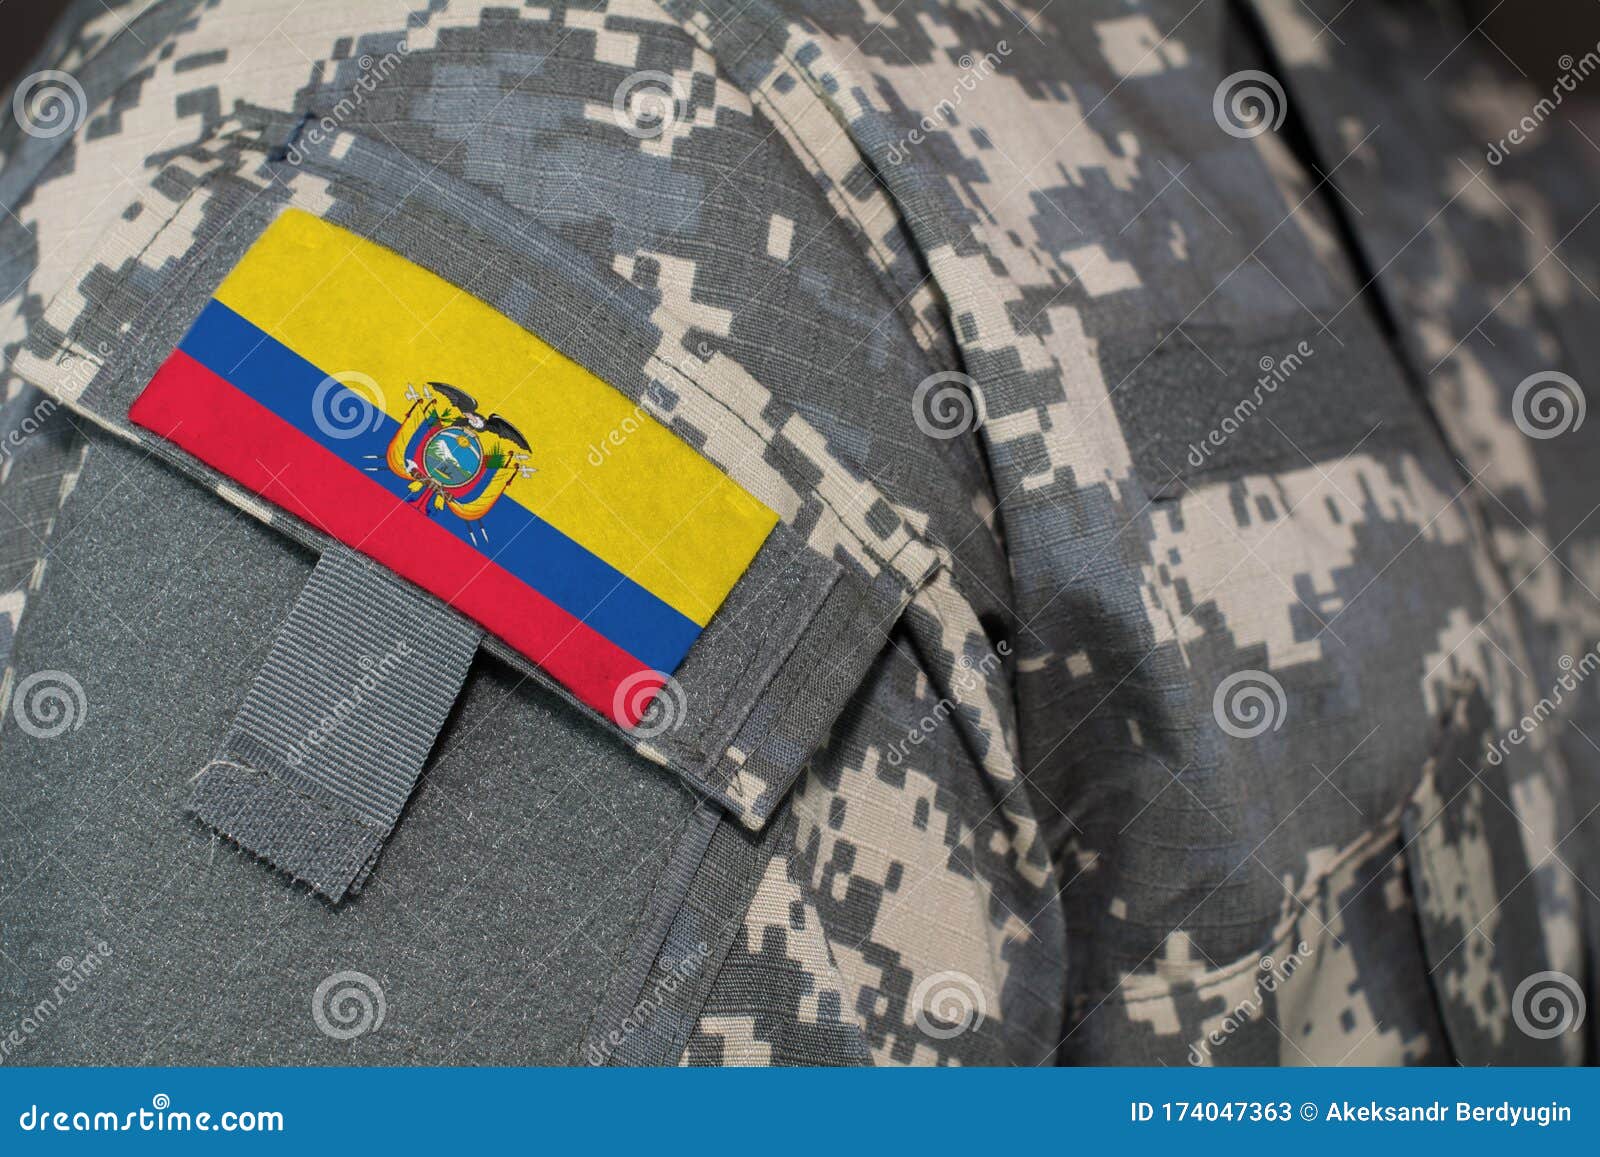 cicatriz Así llamado patrimonio La Bandera De Parcheado Uniforme Del Ejército Ecuatoriano En Soldados Arma.  Concepto Militar Imagen de archivo - Imagen de hombre, uniforme: 174047363